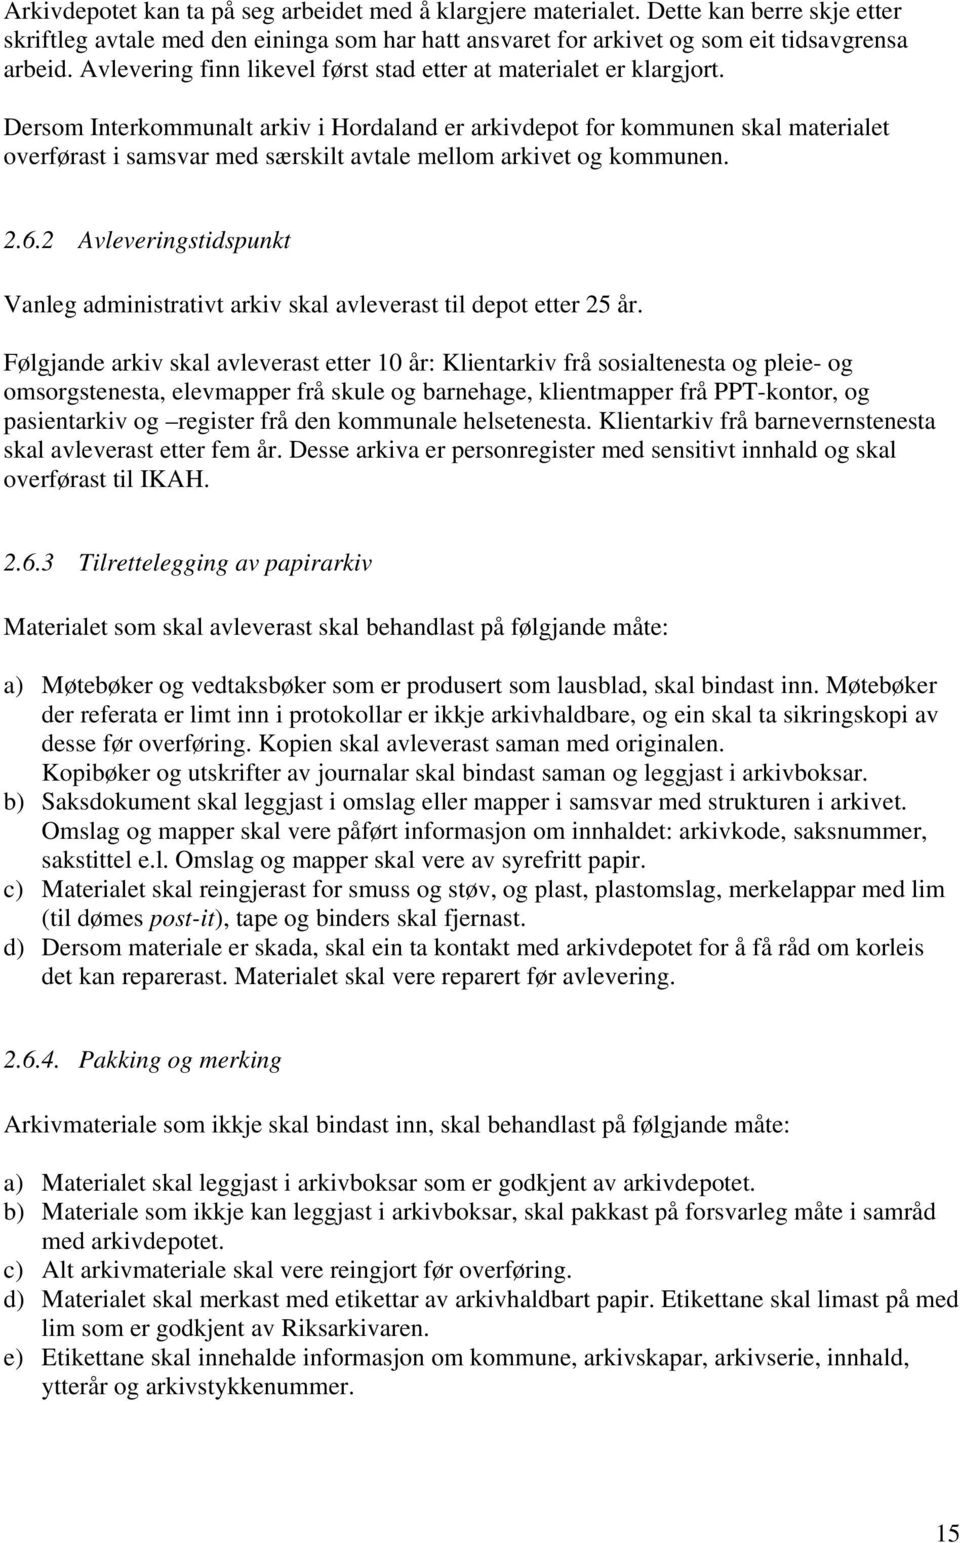 Dersom Interkommunalt arkiv i Hordaland er arkivdepot for kommunen skal materialet overførast i samsvar med særskilt avtale mellom arkivet og kommunen. 2.6.